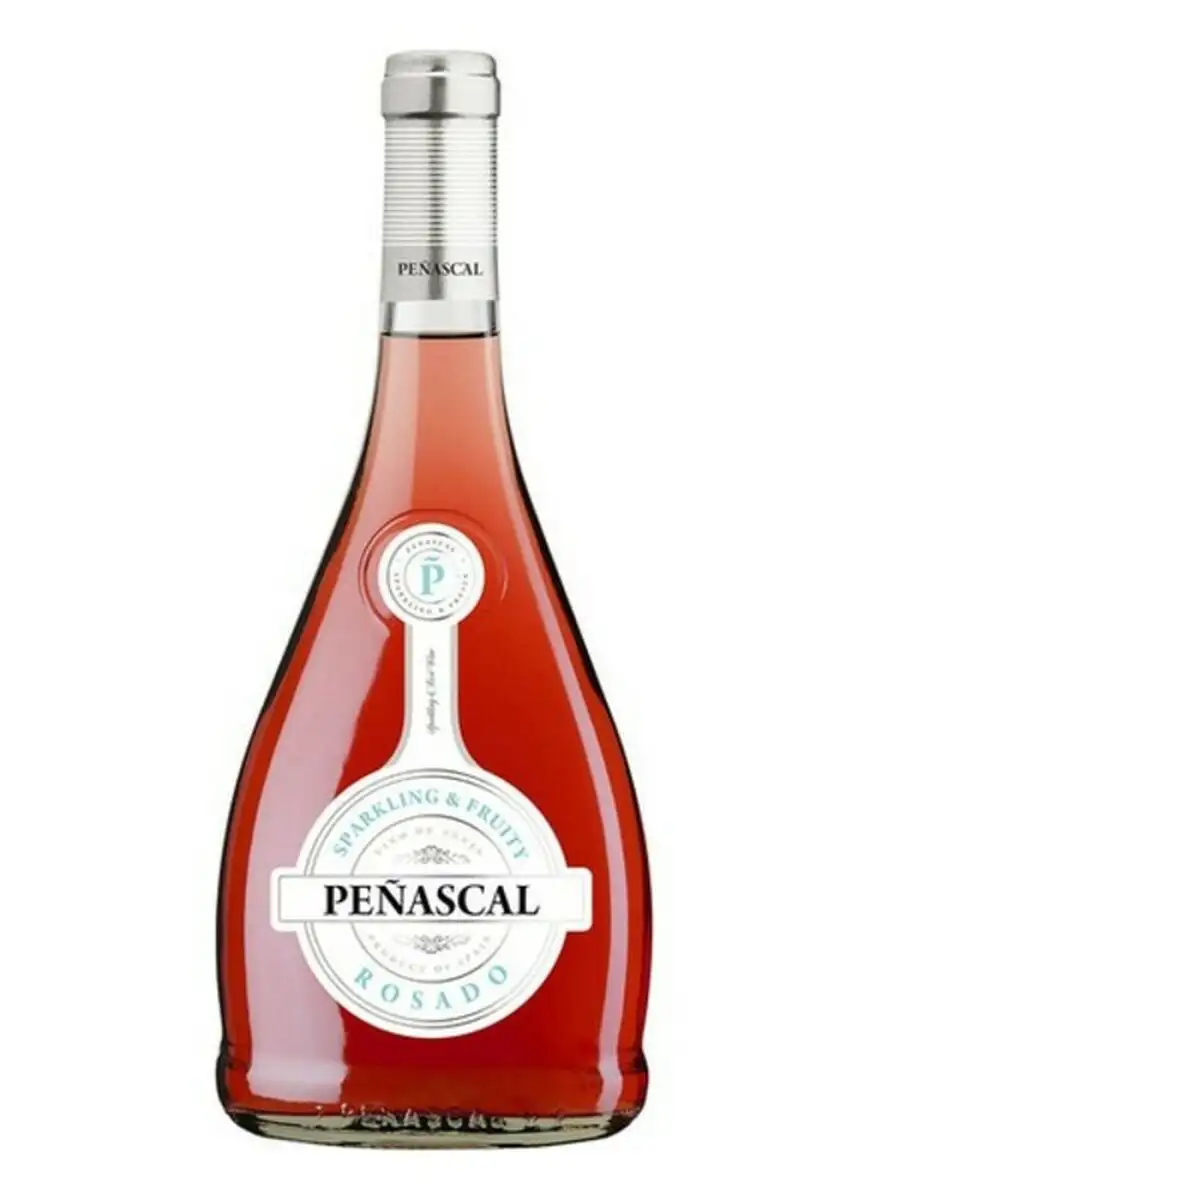 Vin rose pen ascal 25163 75 cl_1042. DIAYTAR SENEGAL - L'Art de Vivre le Shopping Authentique. Découvrez notre boutique en ligne et trouvez des produits qui célèbrent la culture et l'héritage du Sénégal.